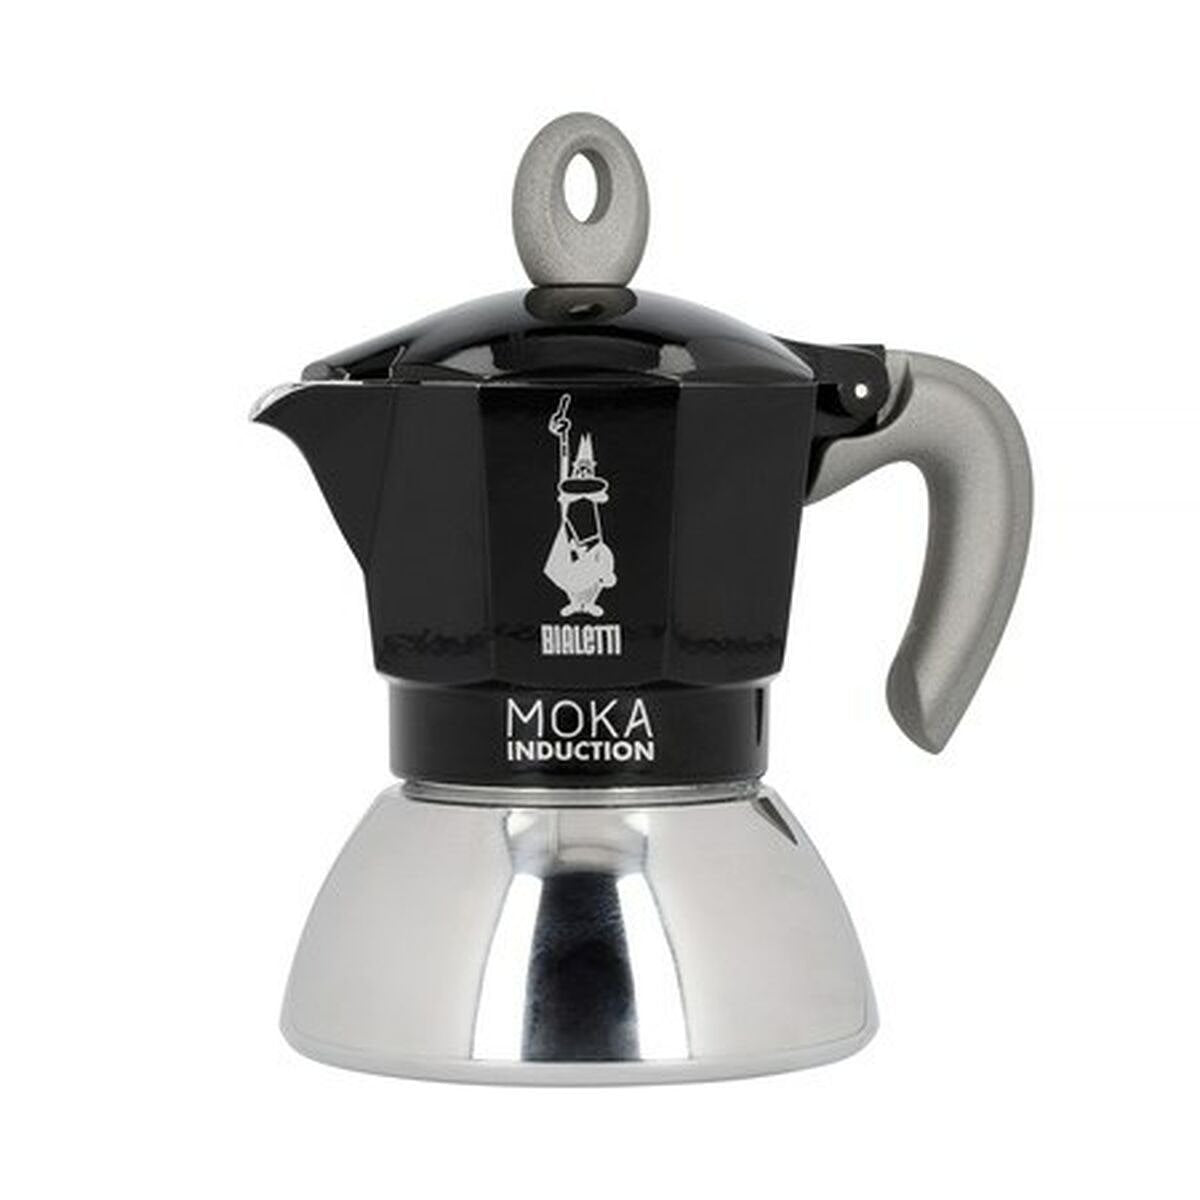 Italiaanse Koffiepot Bialetti Moka Induction Zwart Metaal Roestvrij staal Aluminium 100 ml 2 Koppar